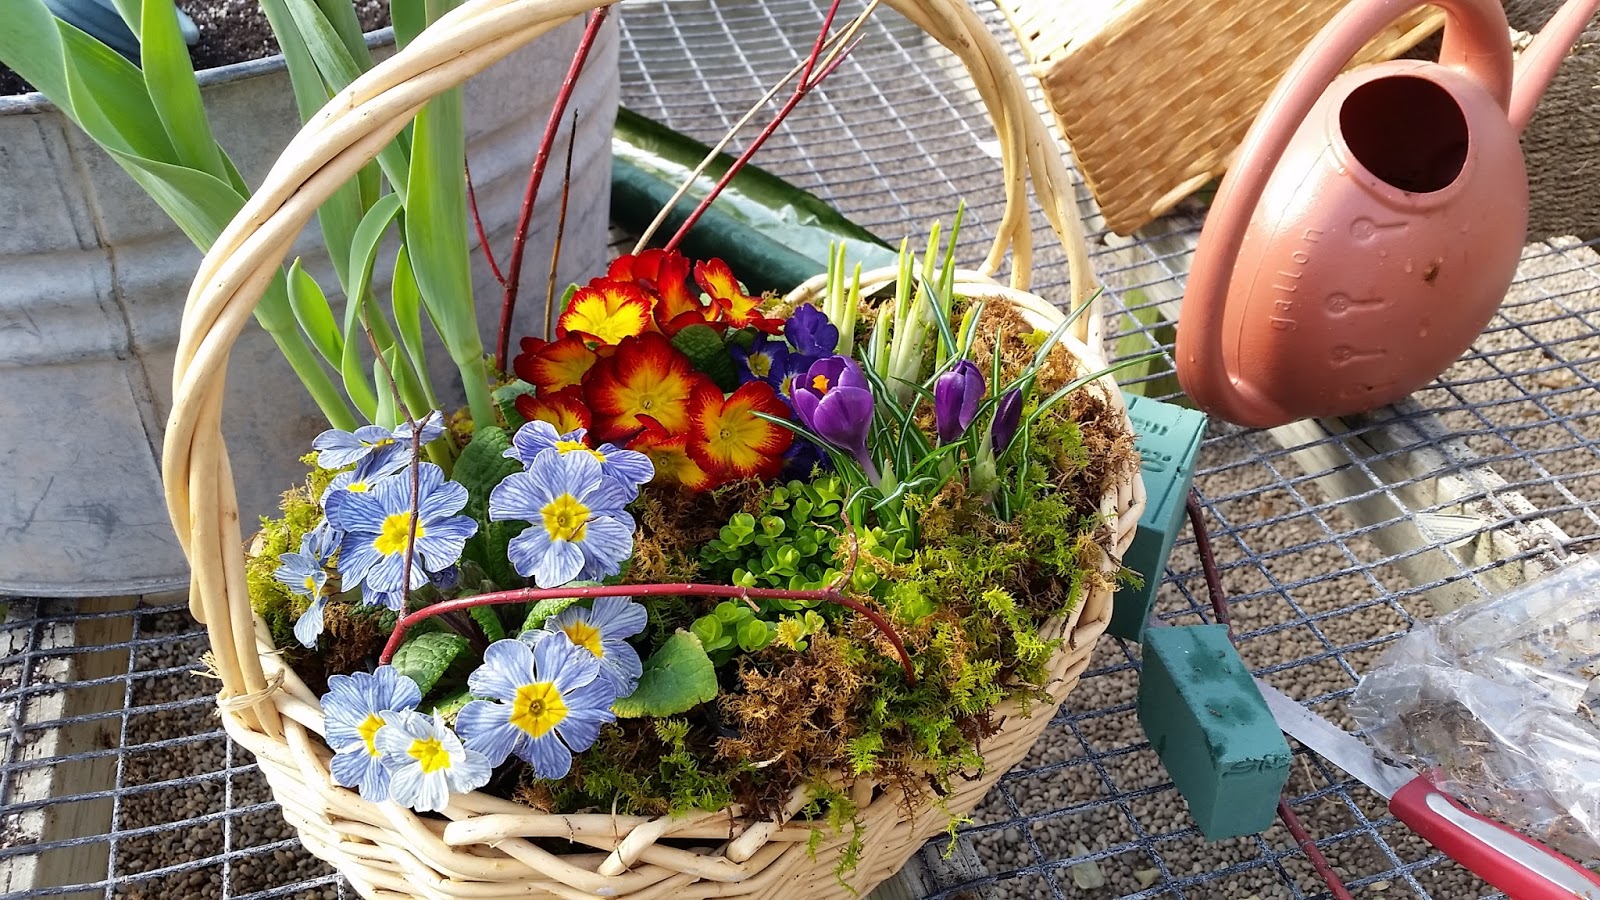 Valentine's flower basket